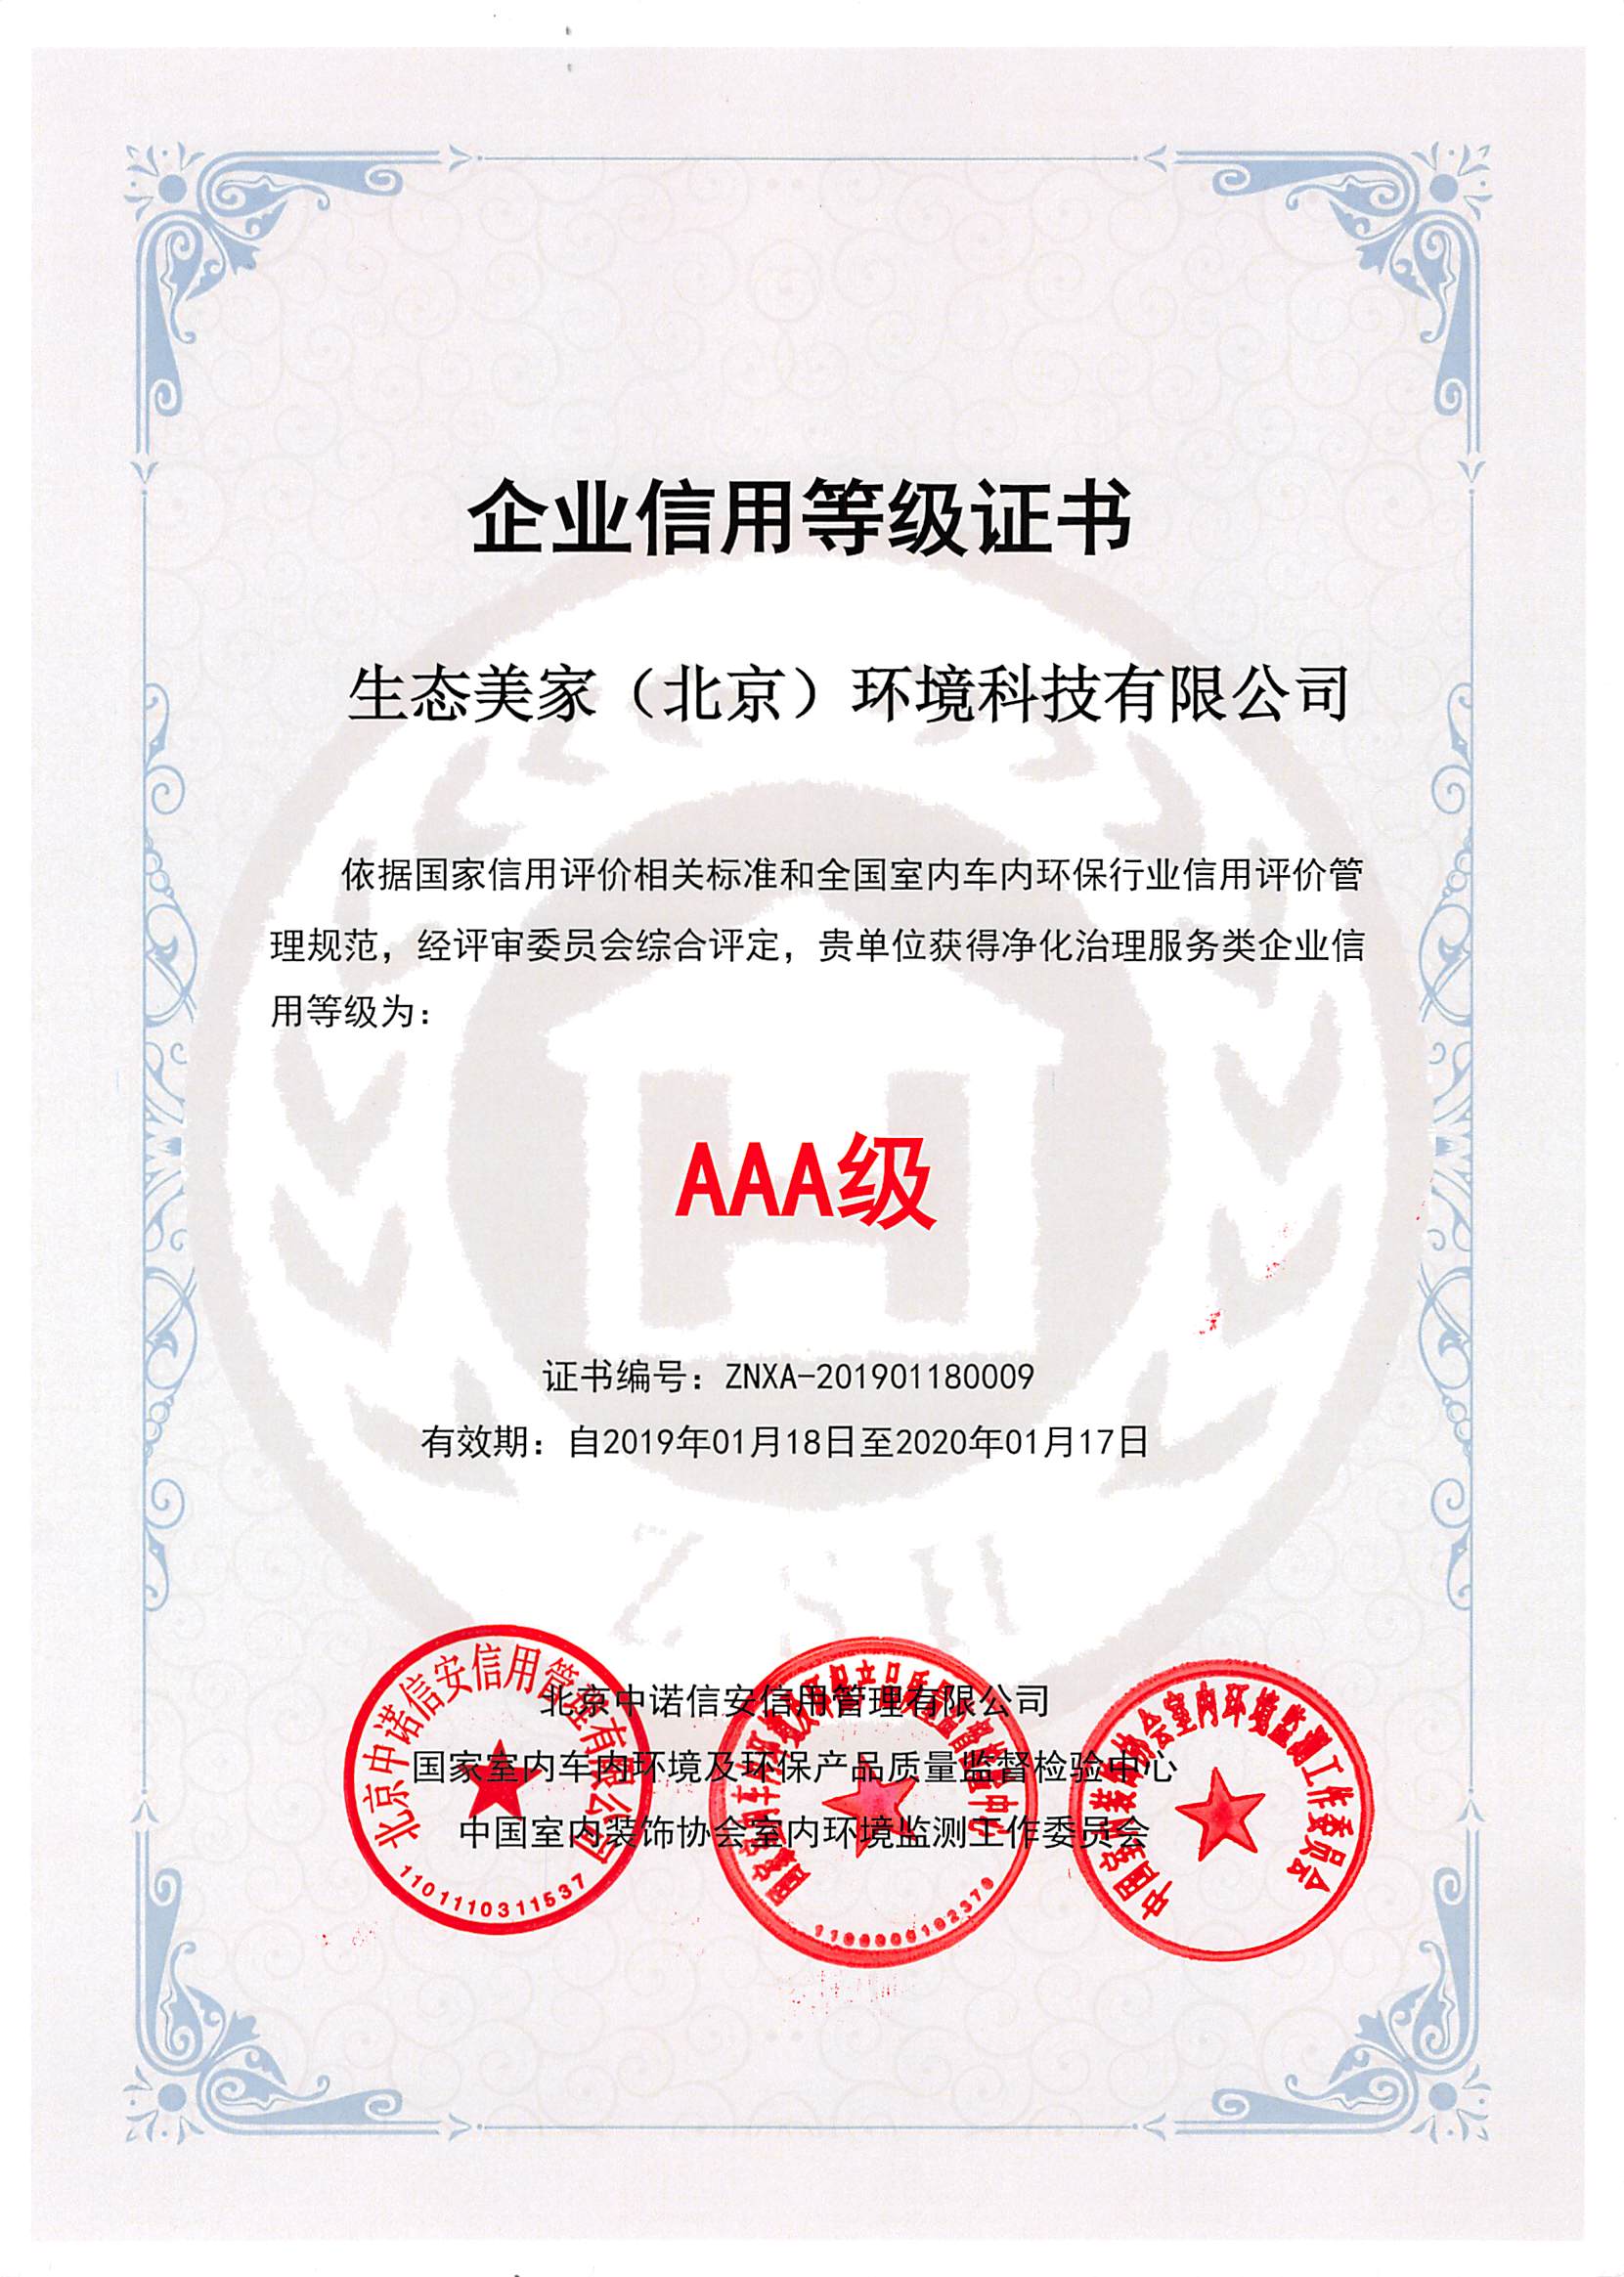 生态美家（北京）环境科技有限公司通过AAA级信用等级认证